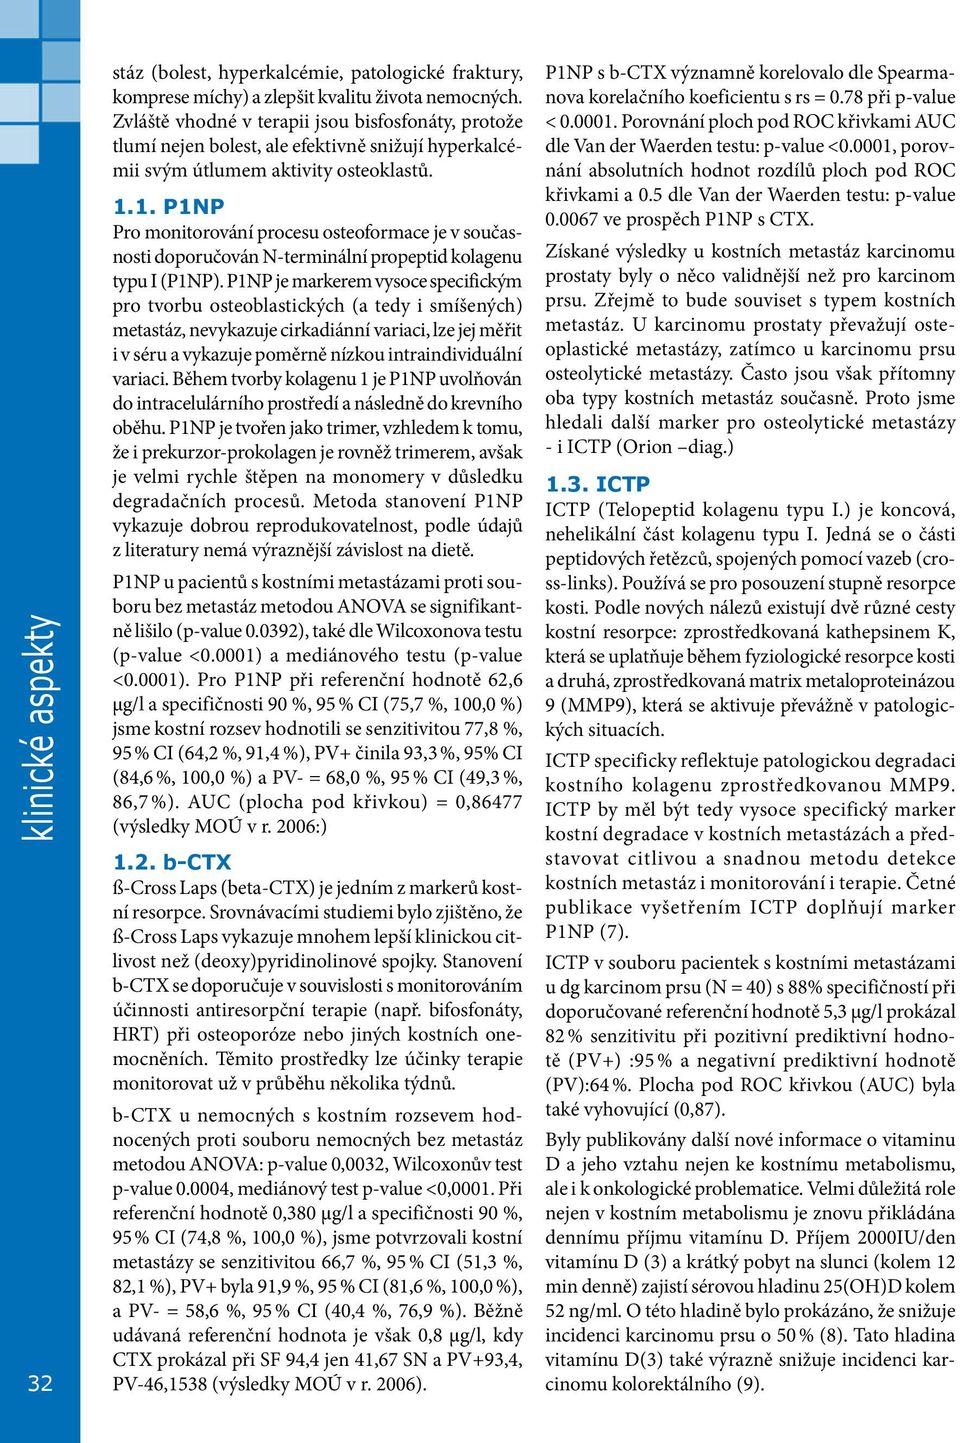 1. P1NP Pro monitorování procesu osteoformace je v současnosti doporučován N-terminální propeptid kolagenu typu I (P1NP).